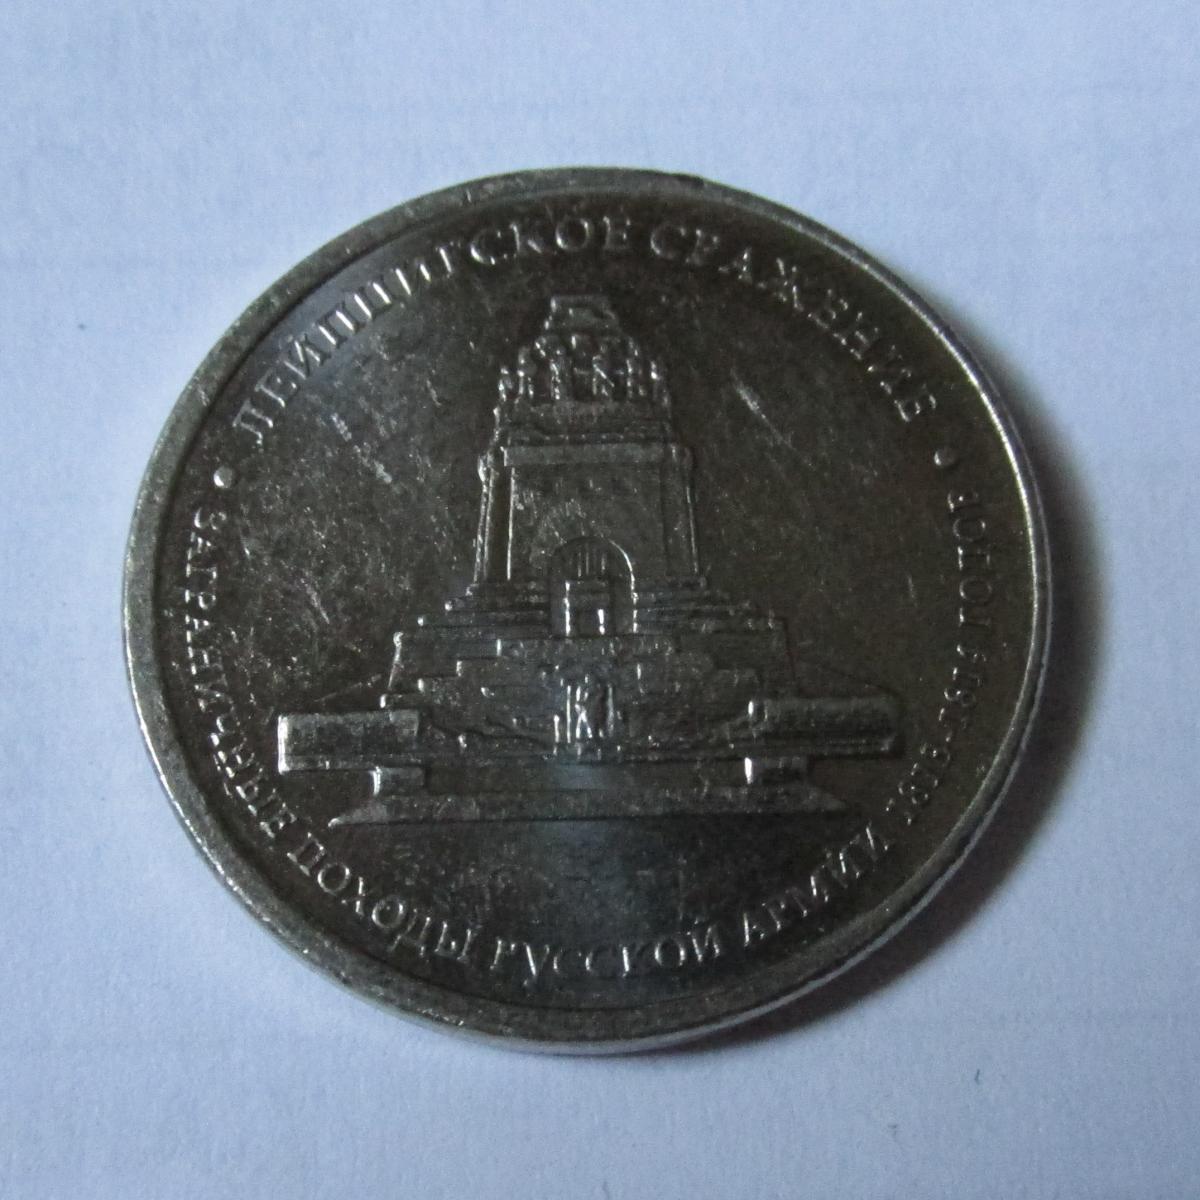 5 рублей 2012 г. ММД. 